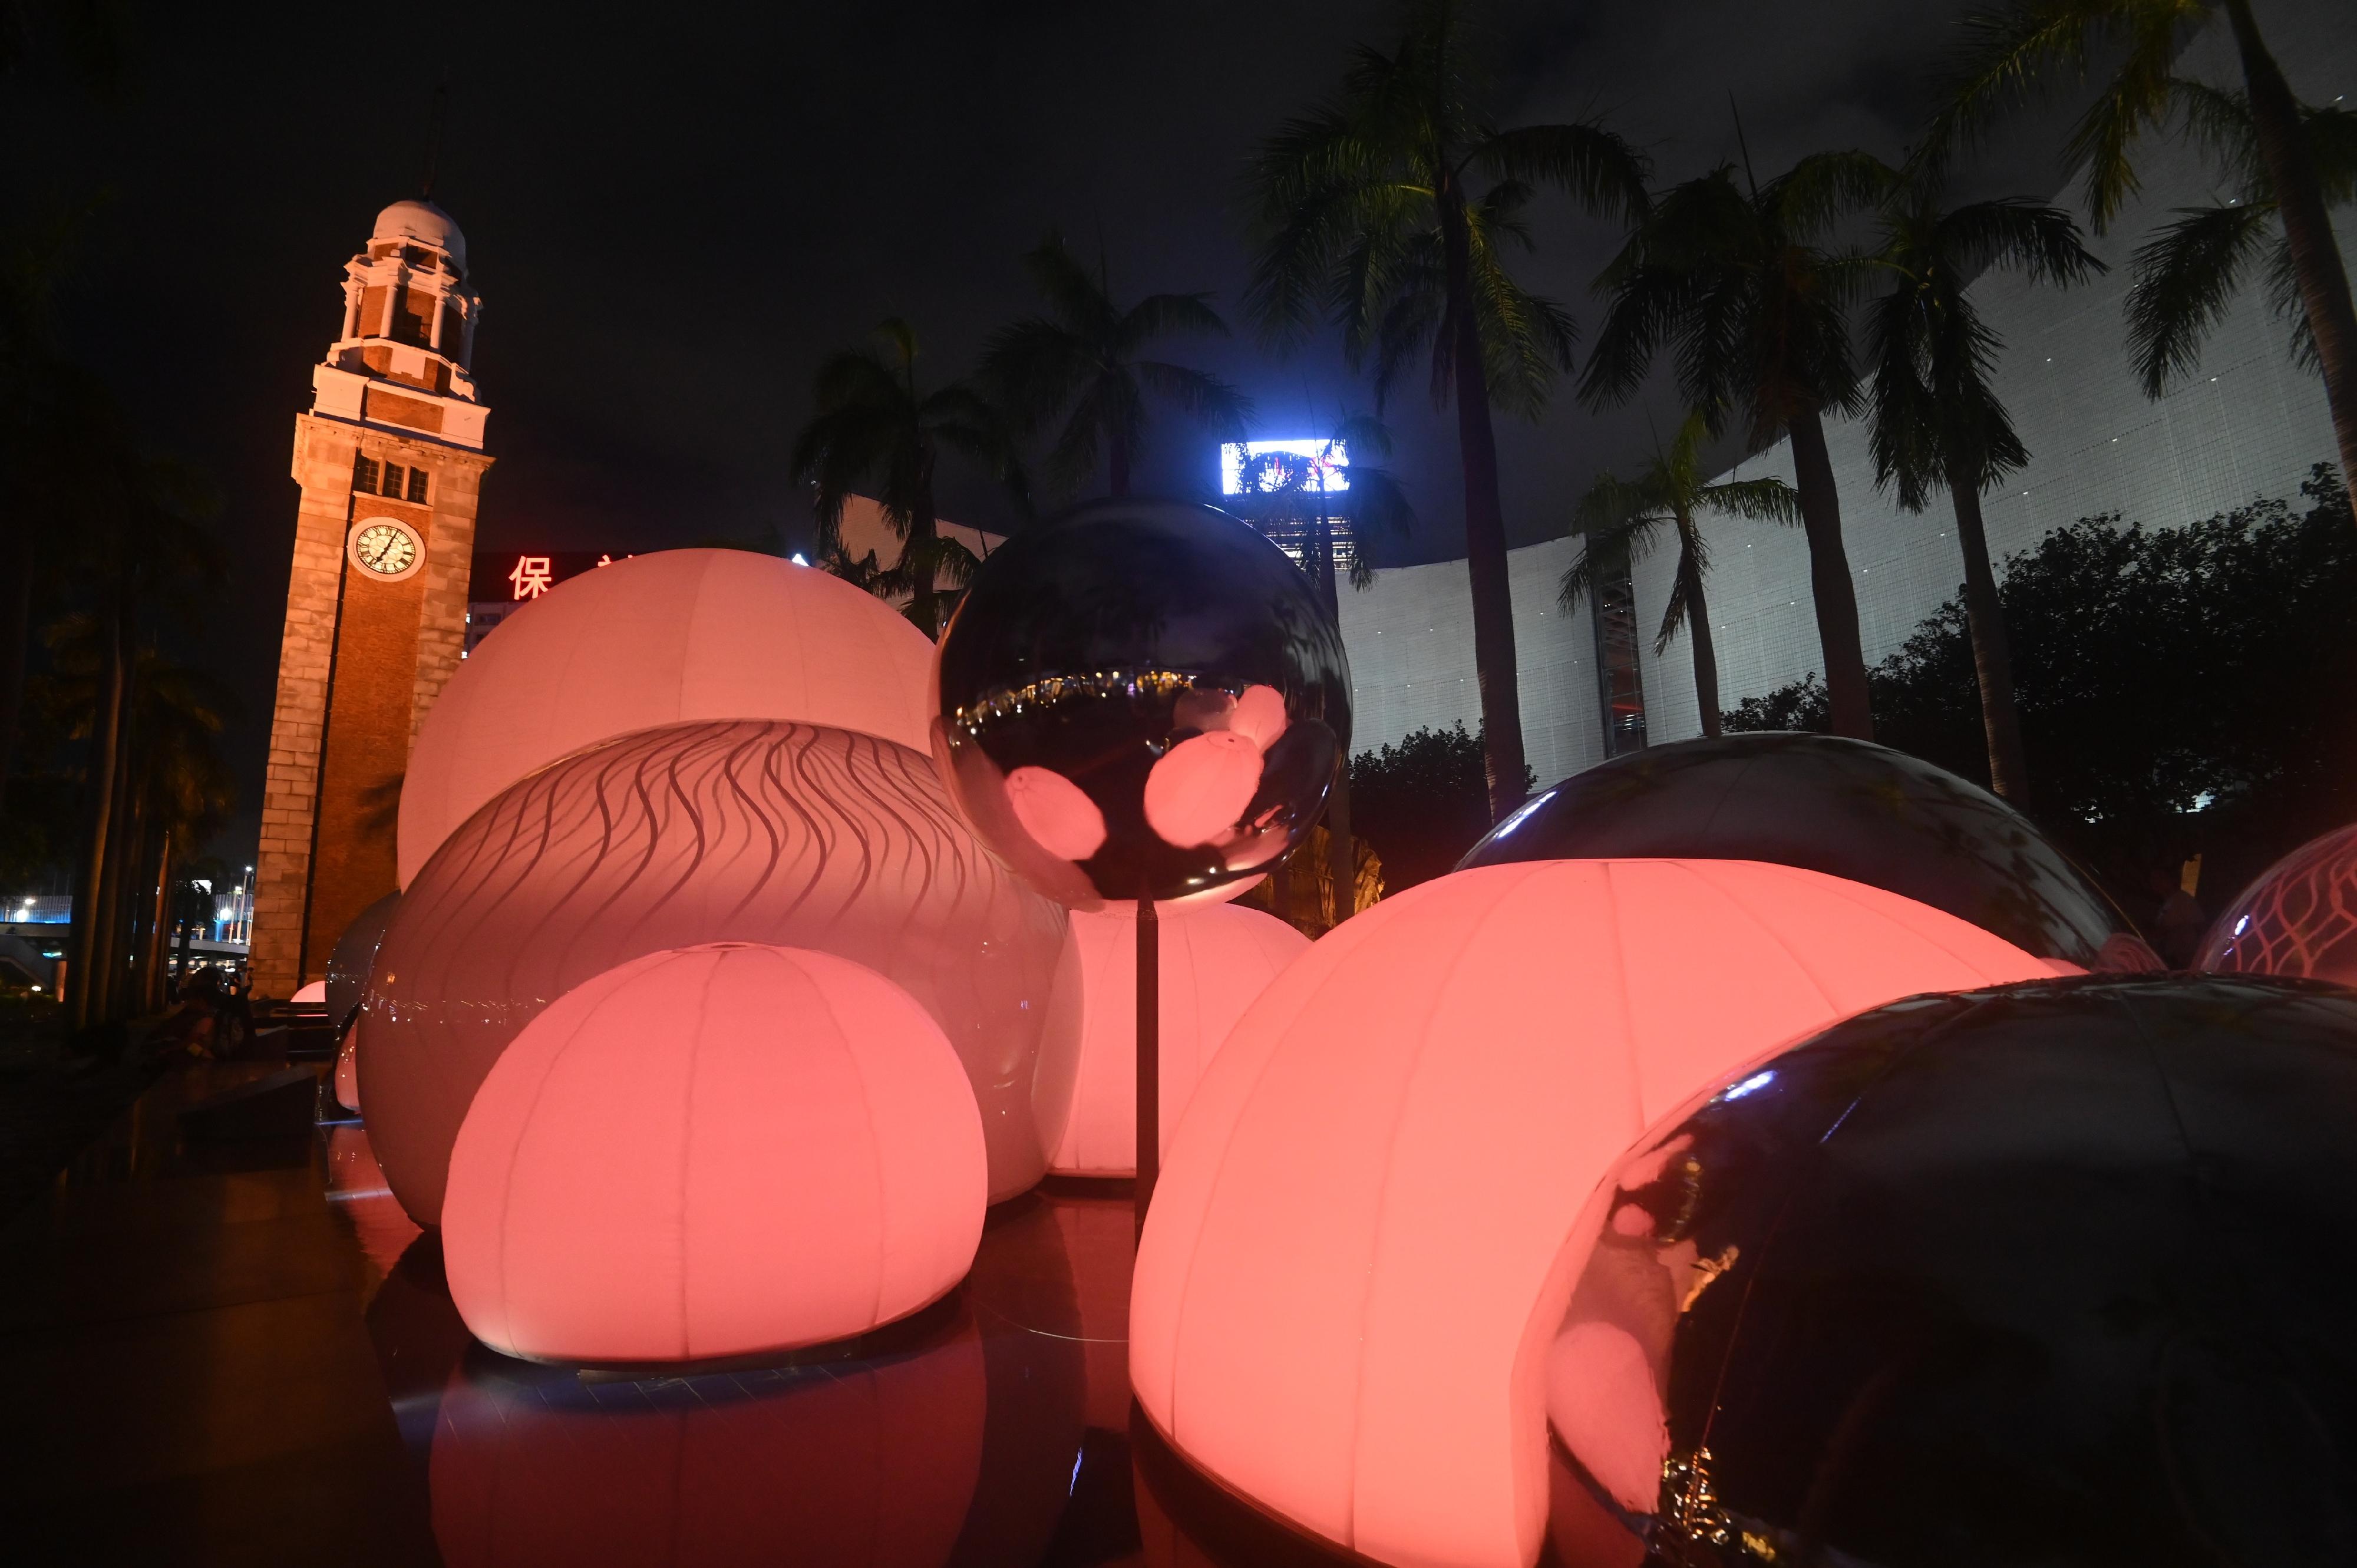 康乐及文化事务署今日（九月十五日）起至十月八日在香港文化中心露天广场的水池展出互动光影装置「月亮制造机」，为癸卯年中秋彩灯会揭开序幕。该装置由本地团队一口设计工作室打造，透过塑像及感测科技营造各种光影效果，装置颜色会因应附近人潮多寡而转变。